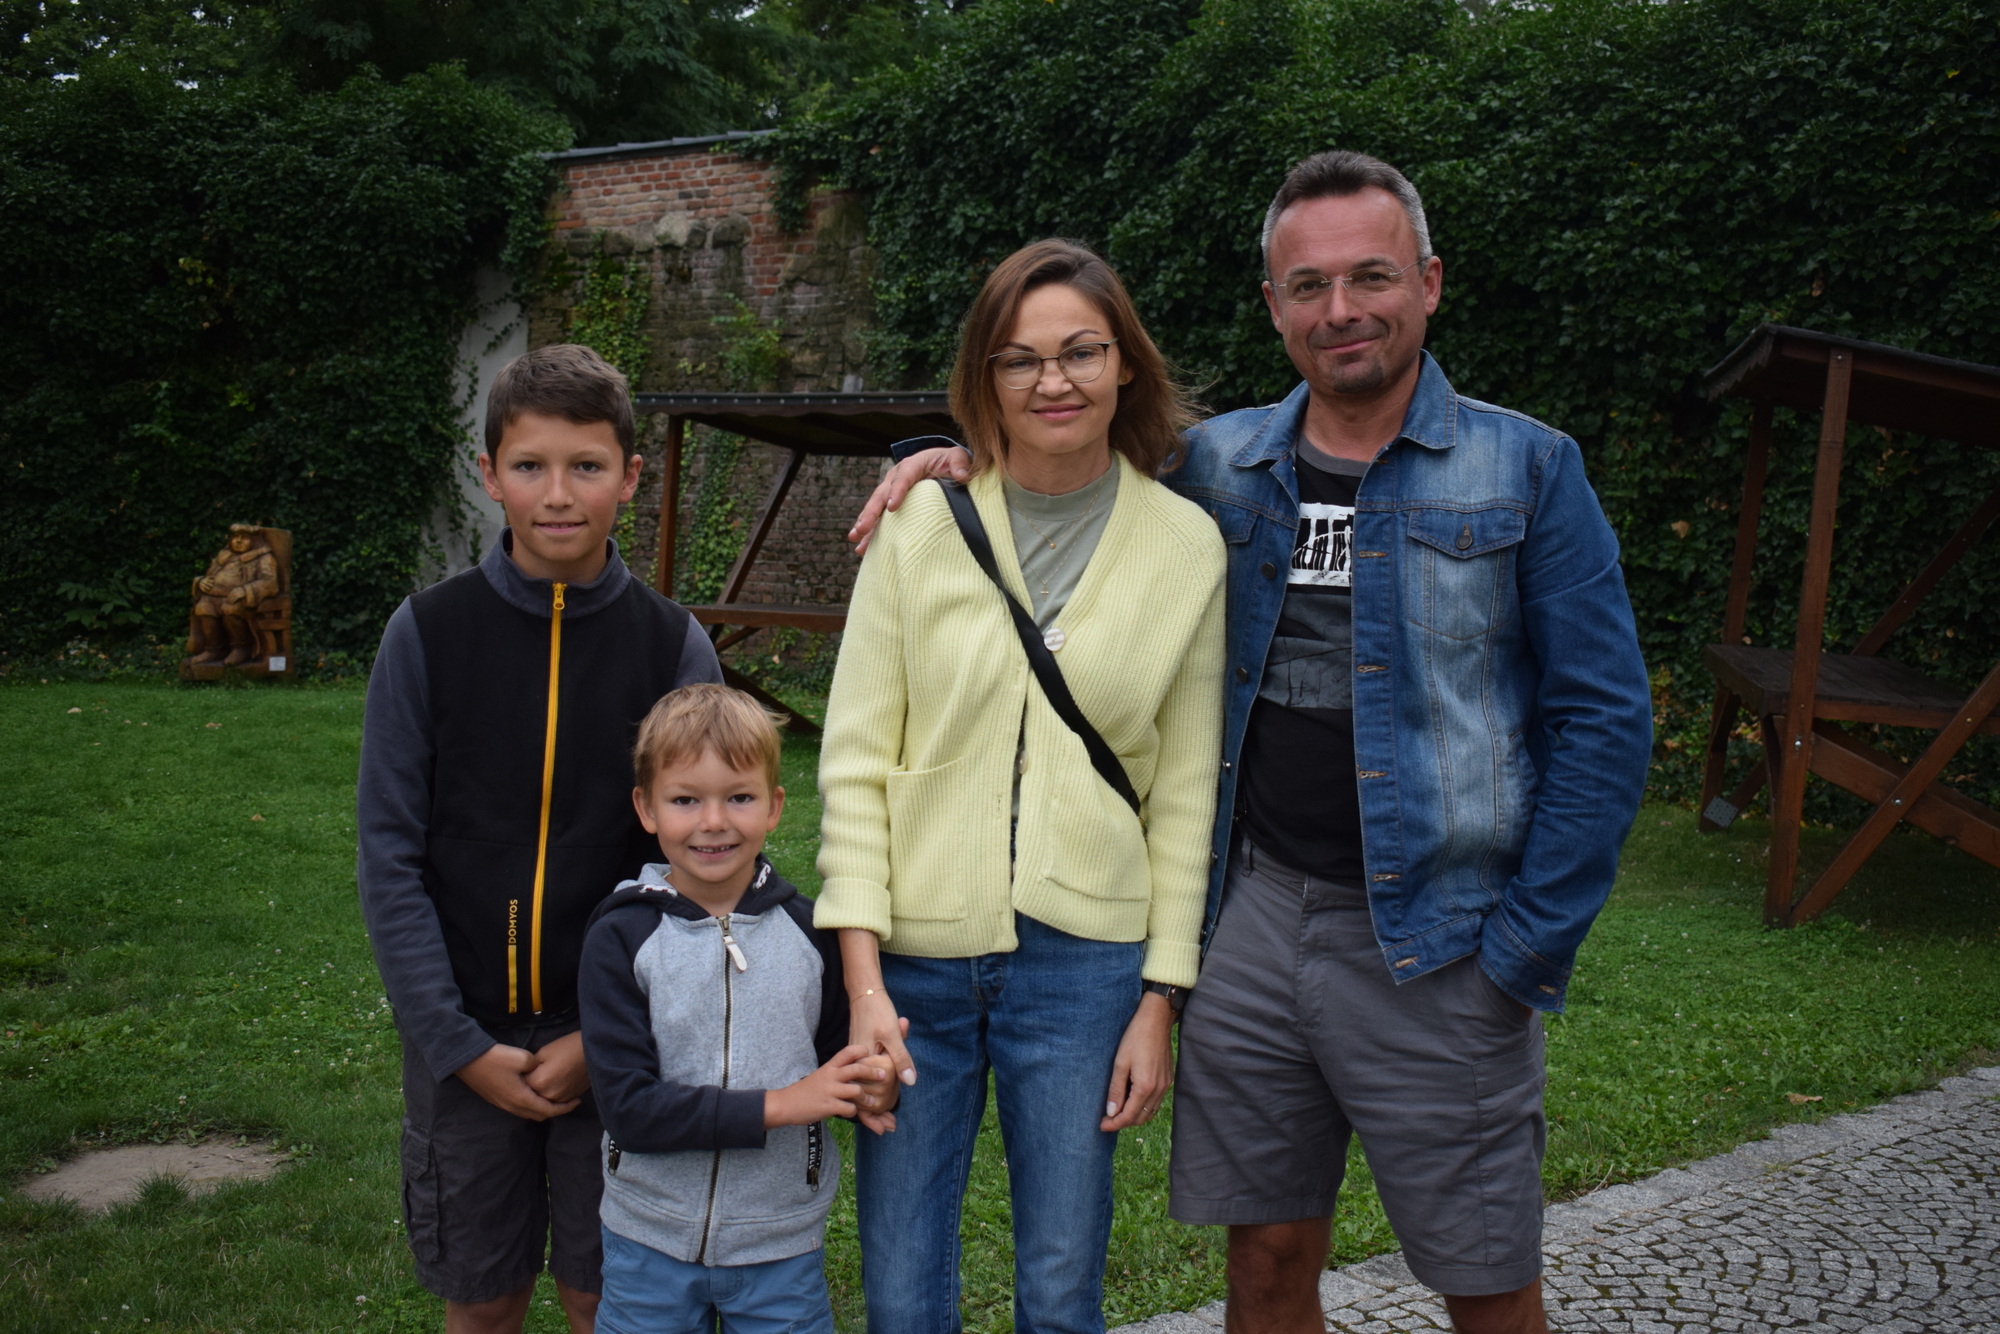 Joanna i Tomasz z dziećmi, Simonem i Danielem. To polsko-czeska rodzina, która przyjechała z Niemiec, aby odwiedzić rodzinę, a przy okazji zapoznać dzieci bliżej z wojskim polskim.